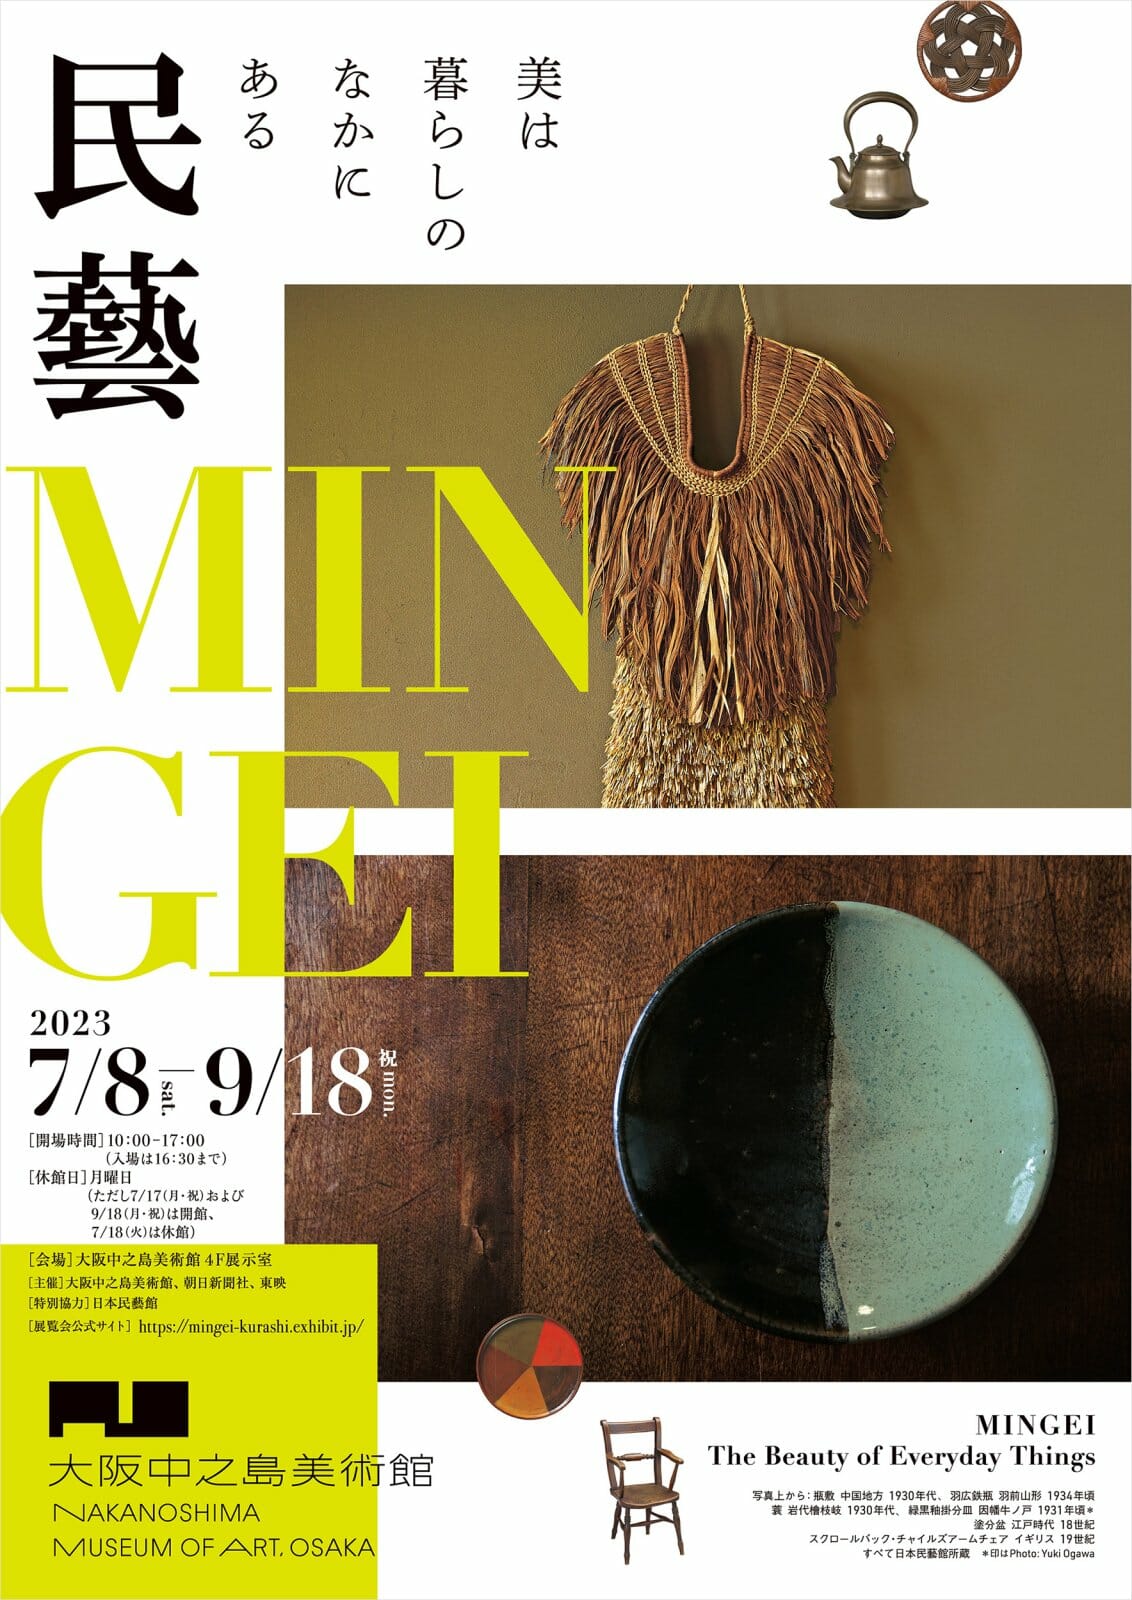 民藝 MINGEI―美は暮らしのなかにある